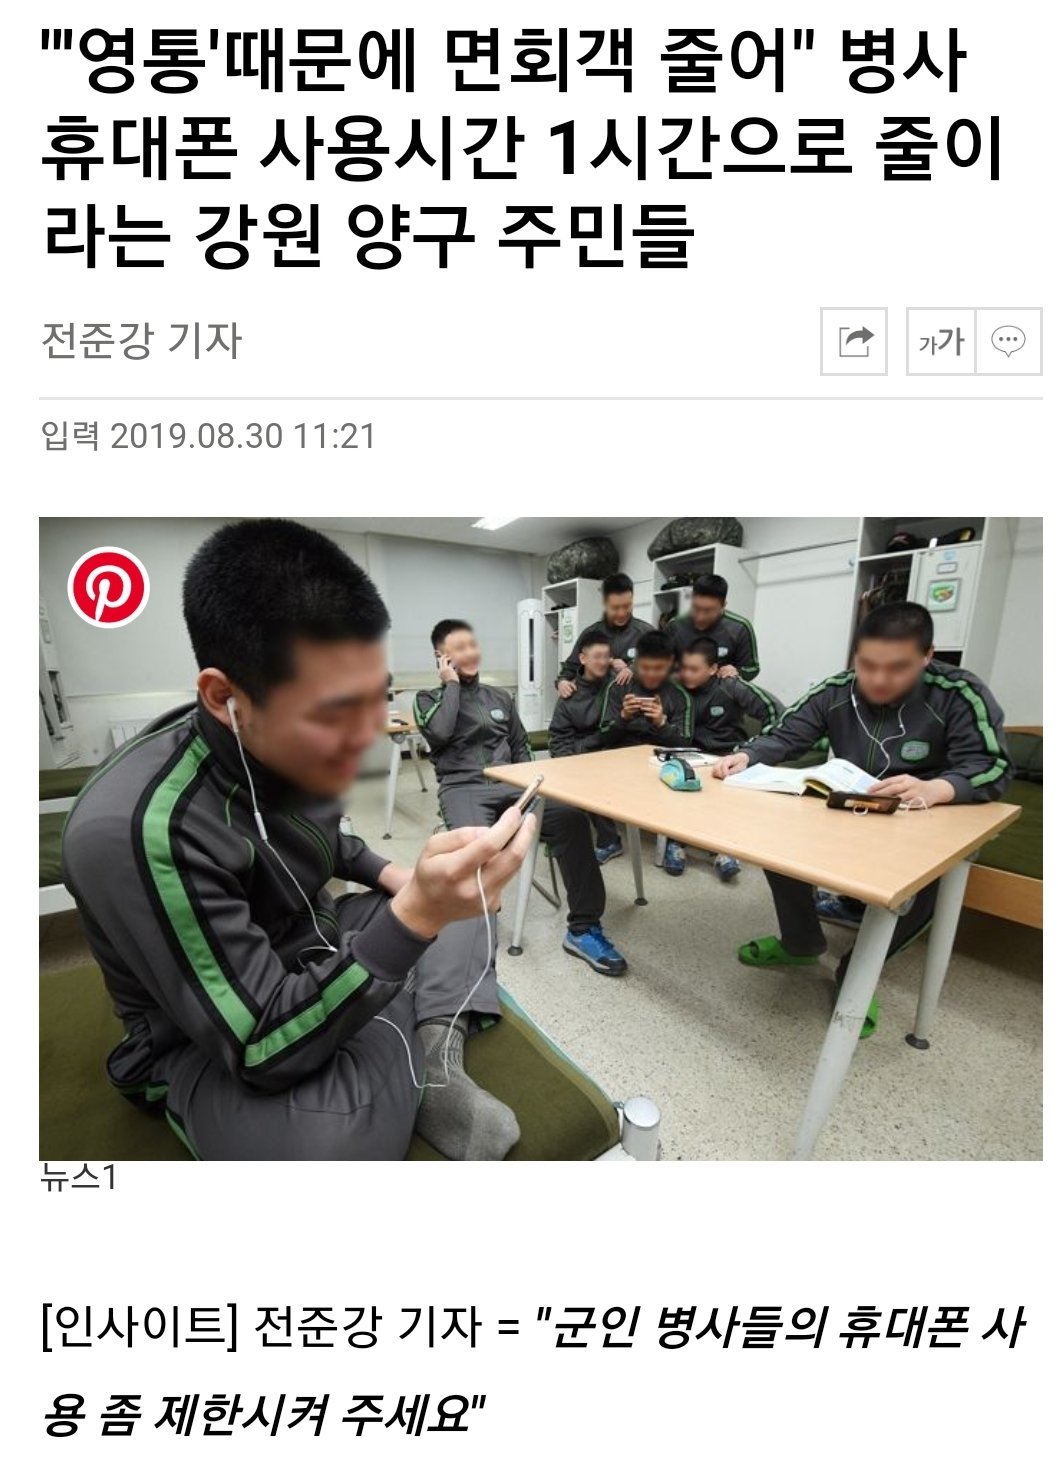 군인이 핸드폰 소지해도 되는 이유.